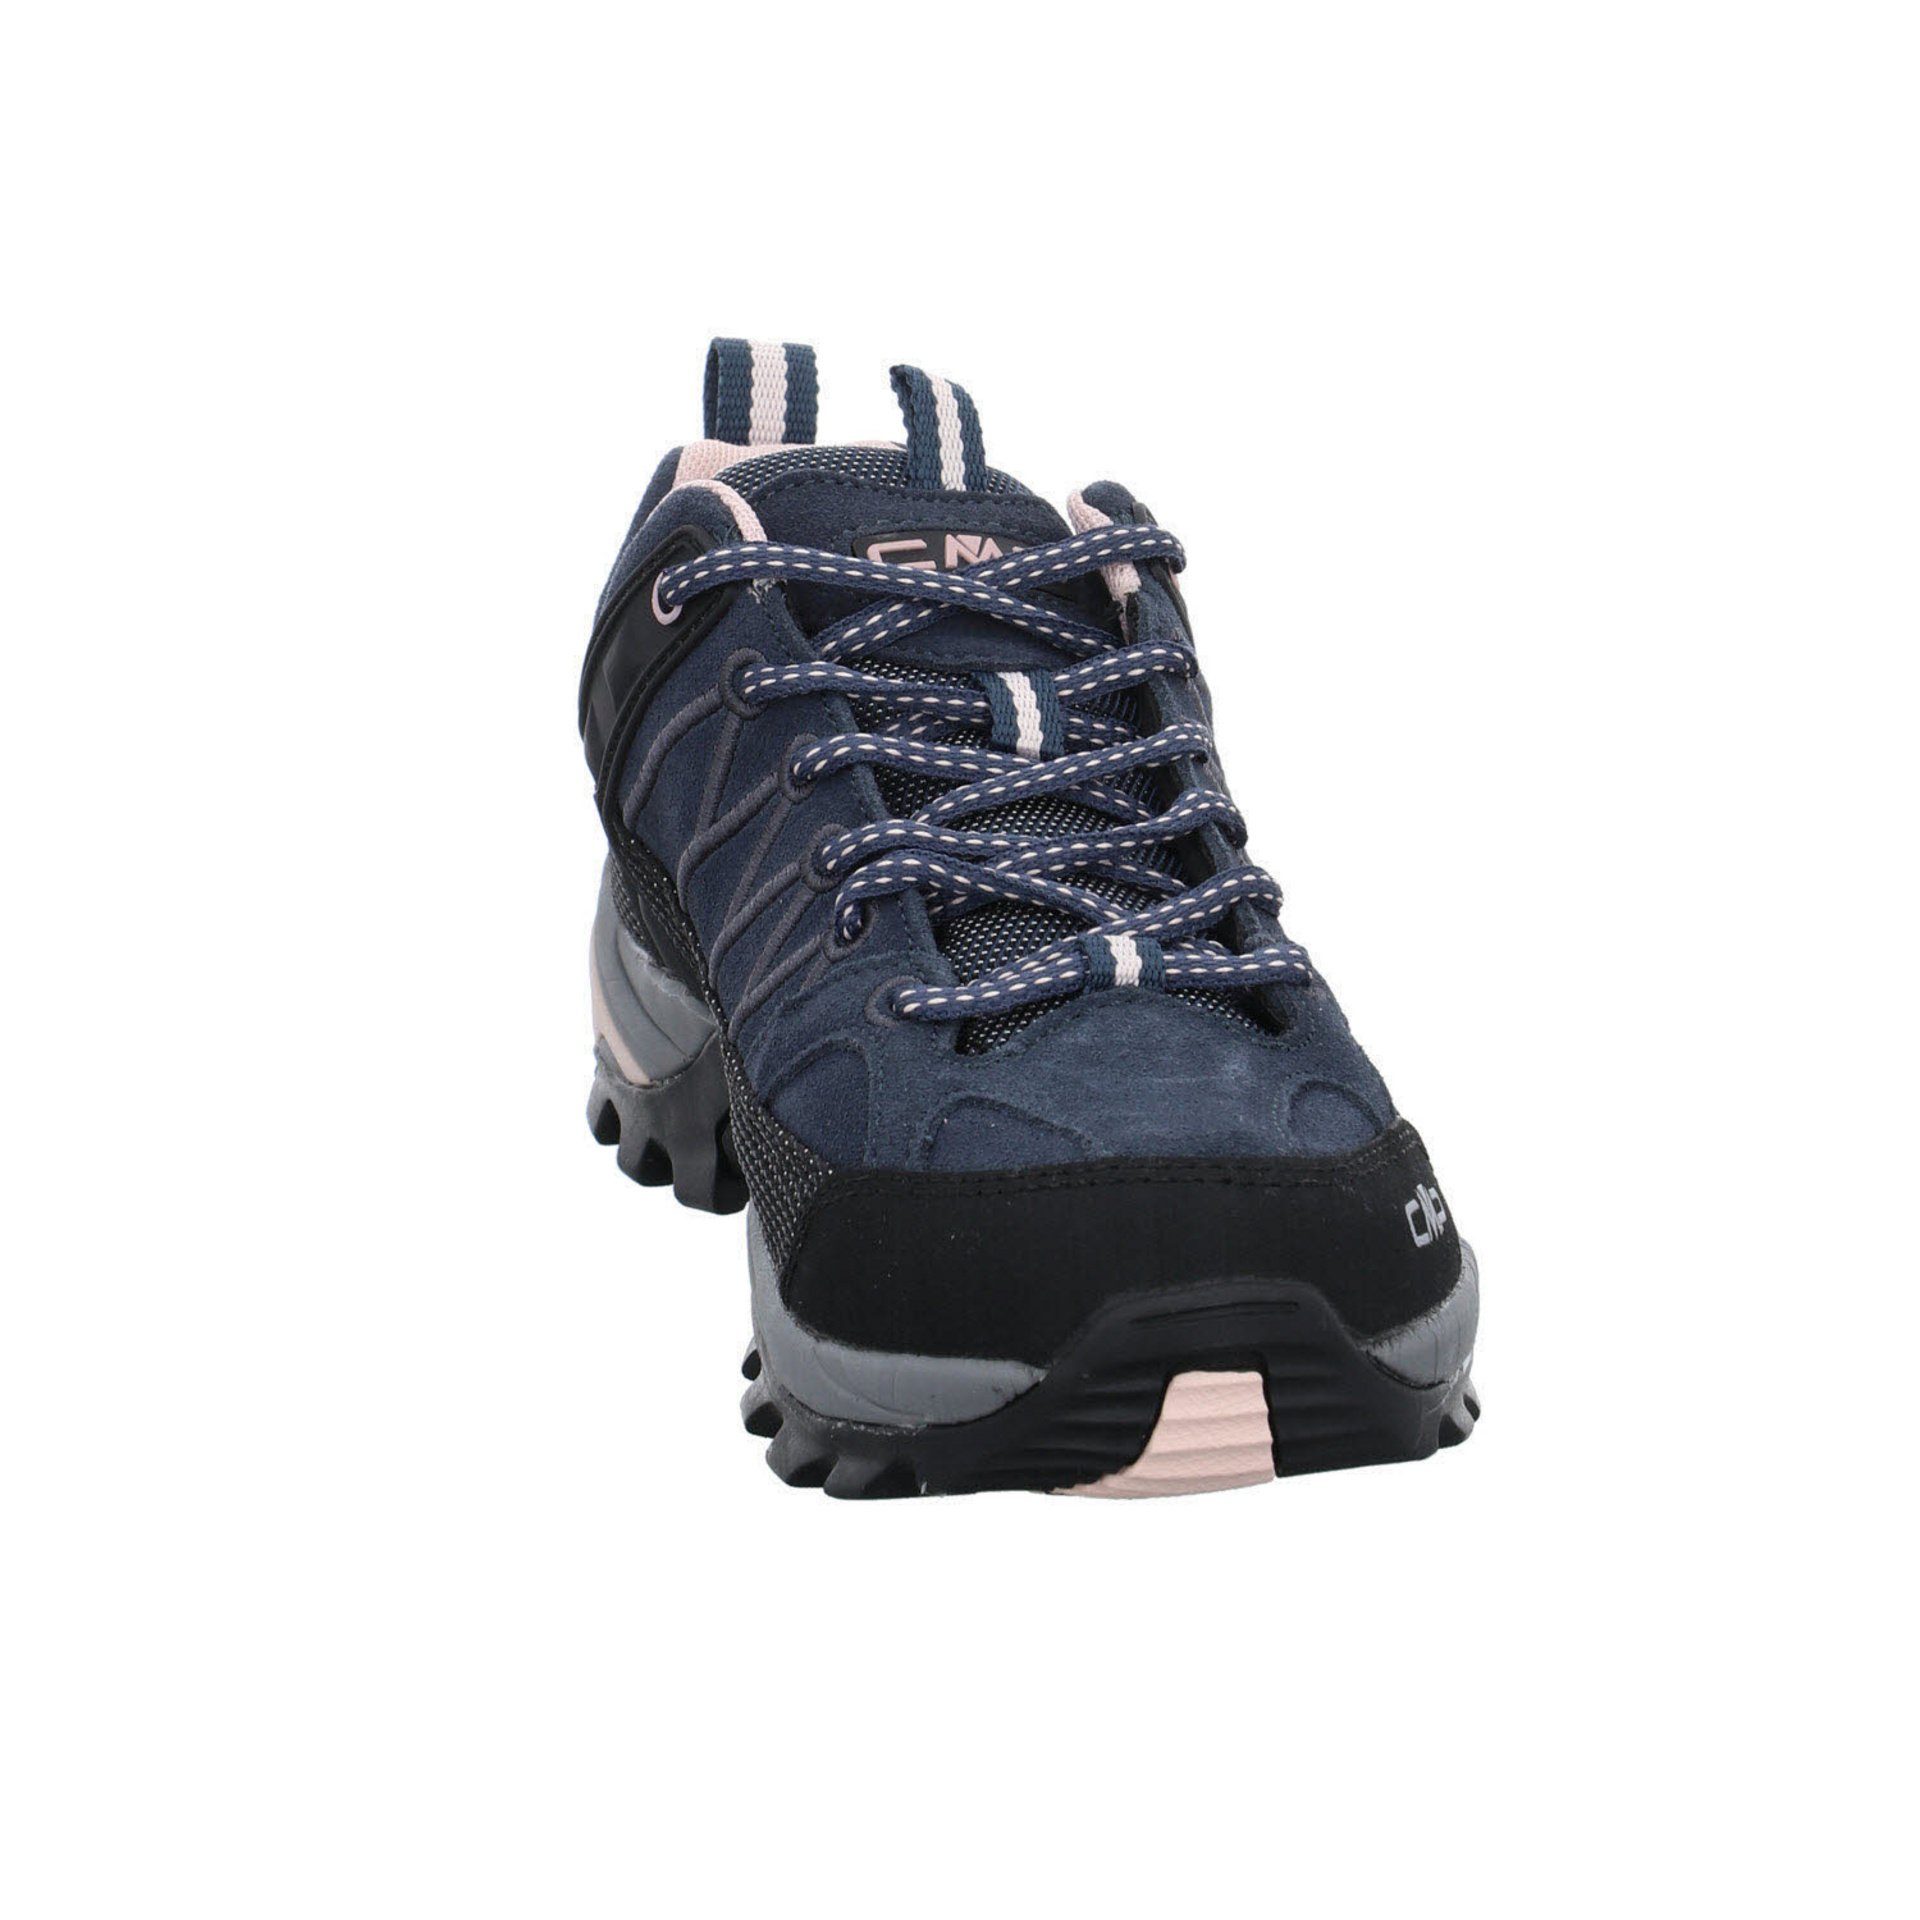 CMP Damen Schuhe Outdoor Riegel Outdoorschuh Leder-/Textilkombination (201) Low anthrazit Outdoorschuh